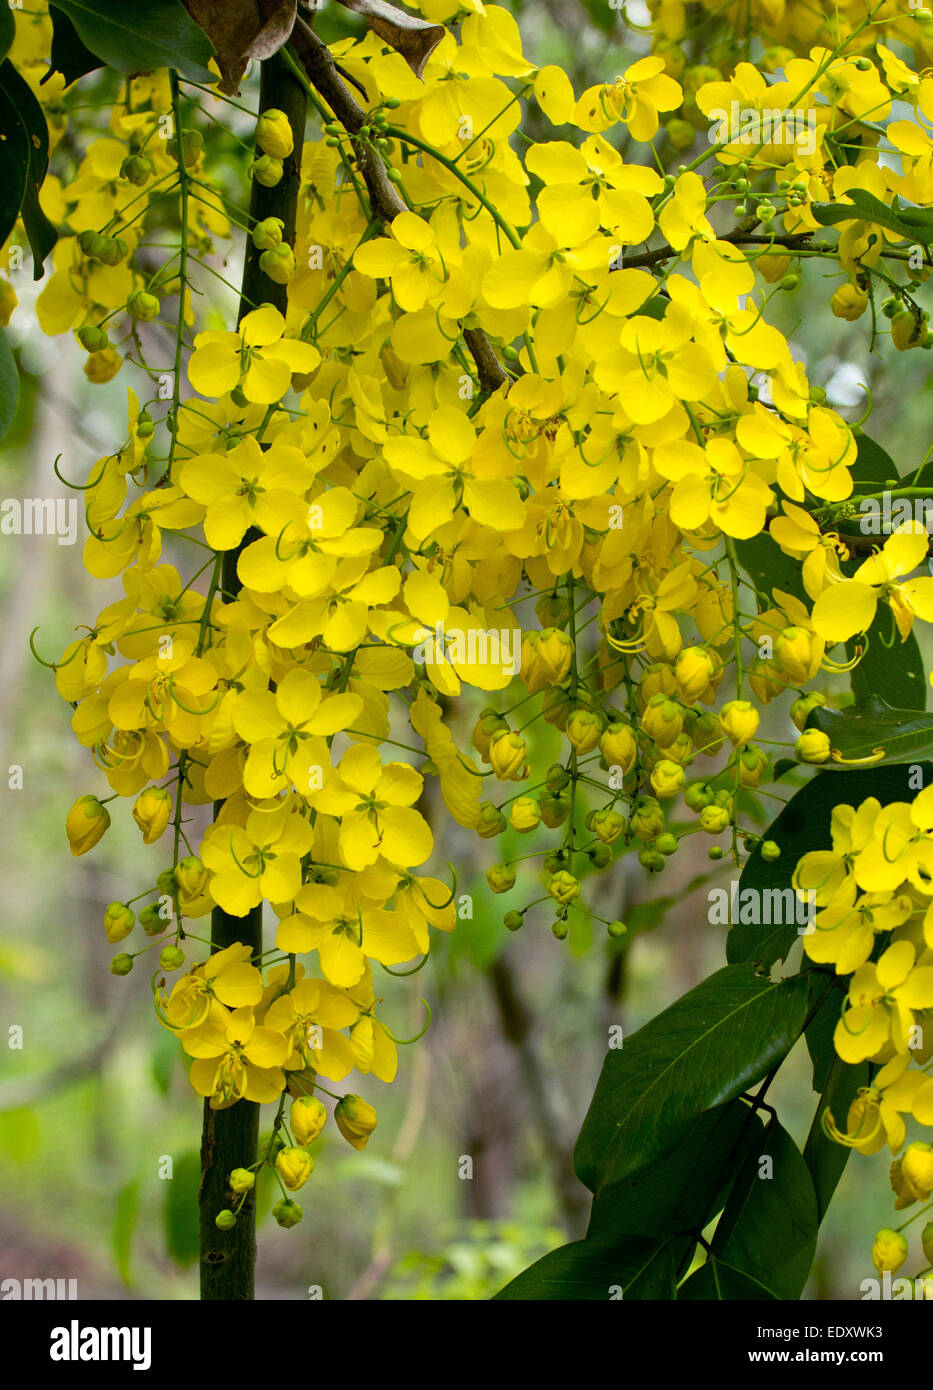 Lunghi racemi di spettacolari fiori gialli di Cassia fistola, Golden Shower Tree, sullo sfondo del fogliame verde Foto Stock